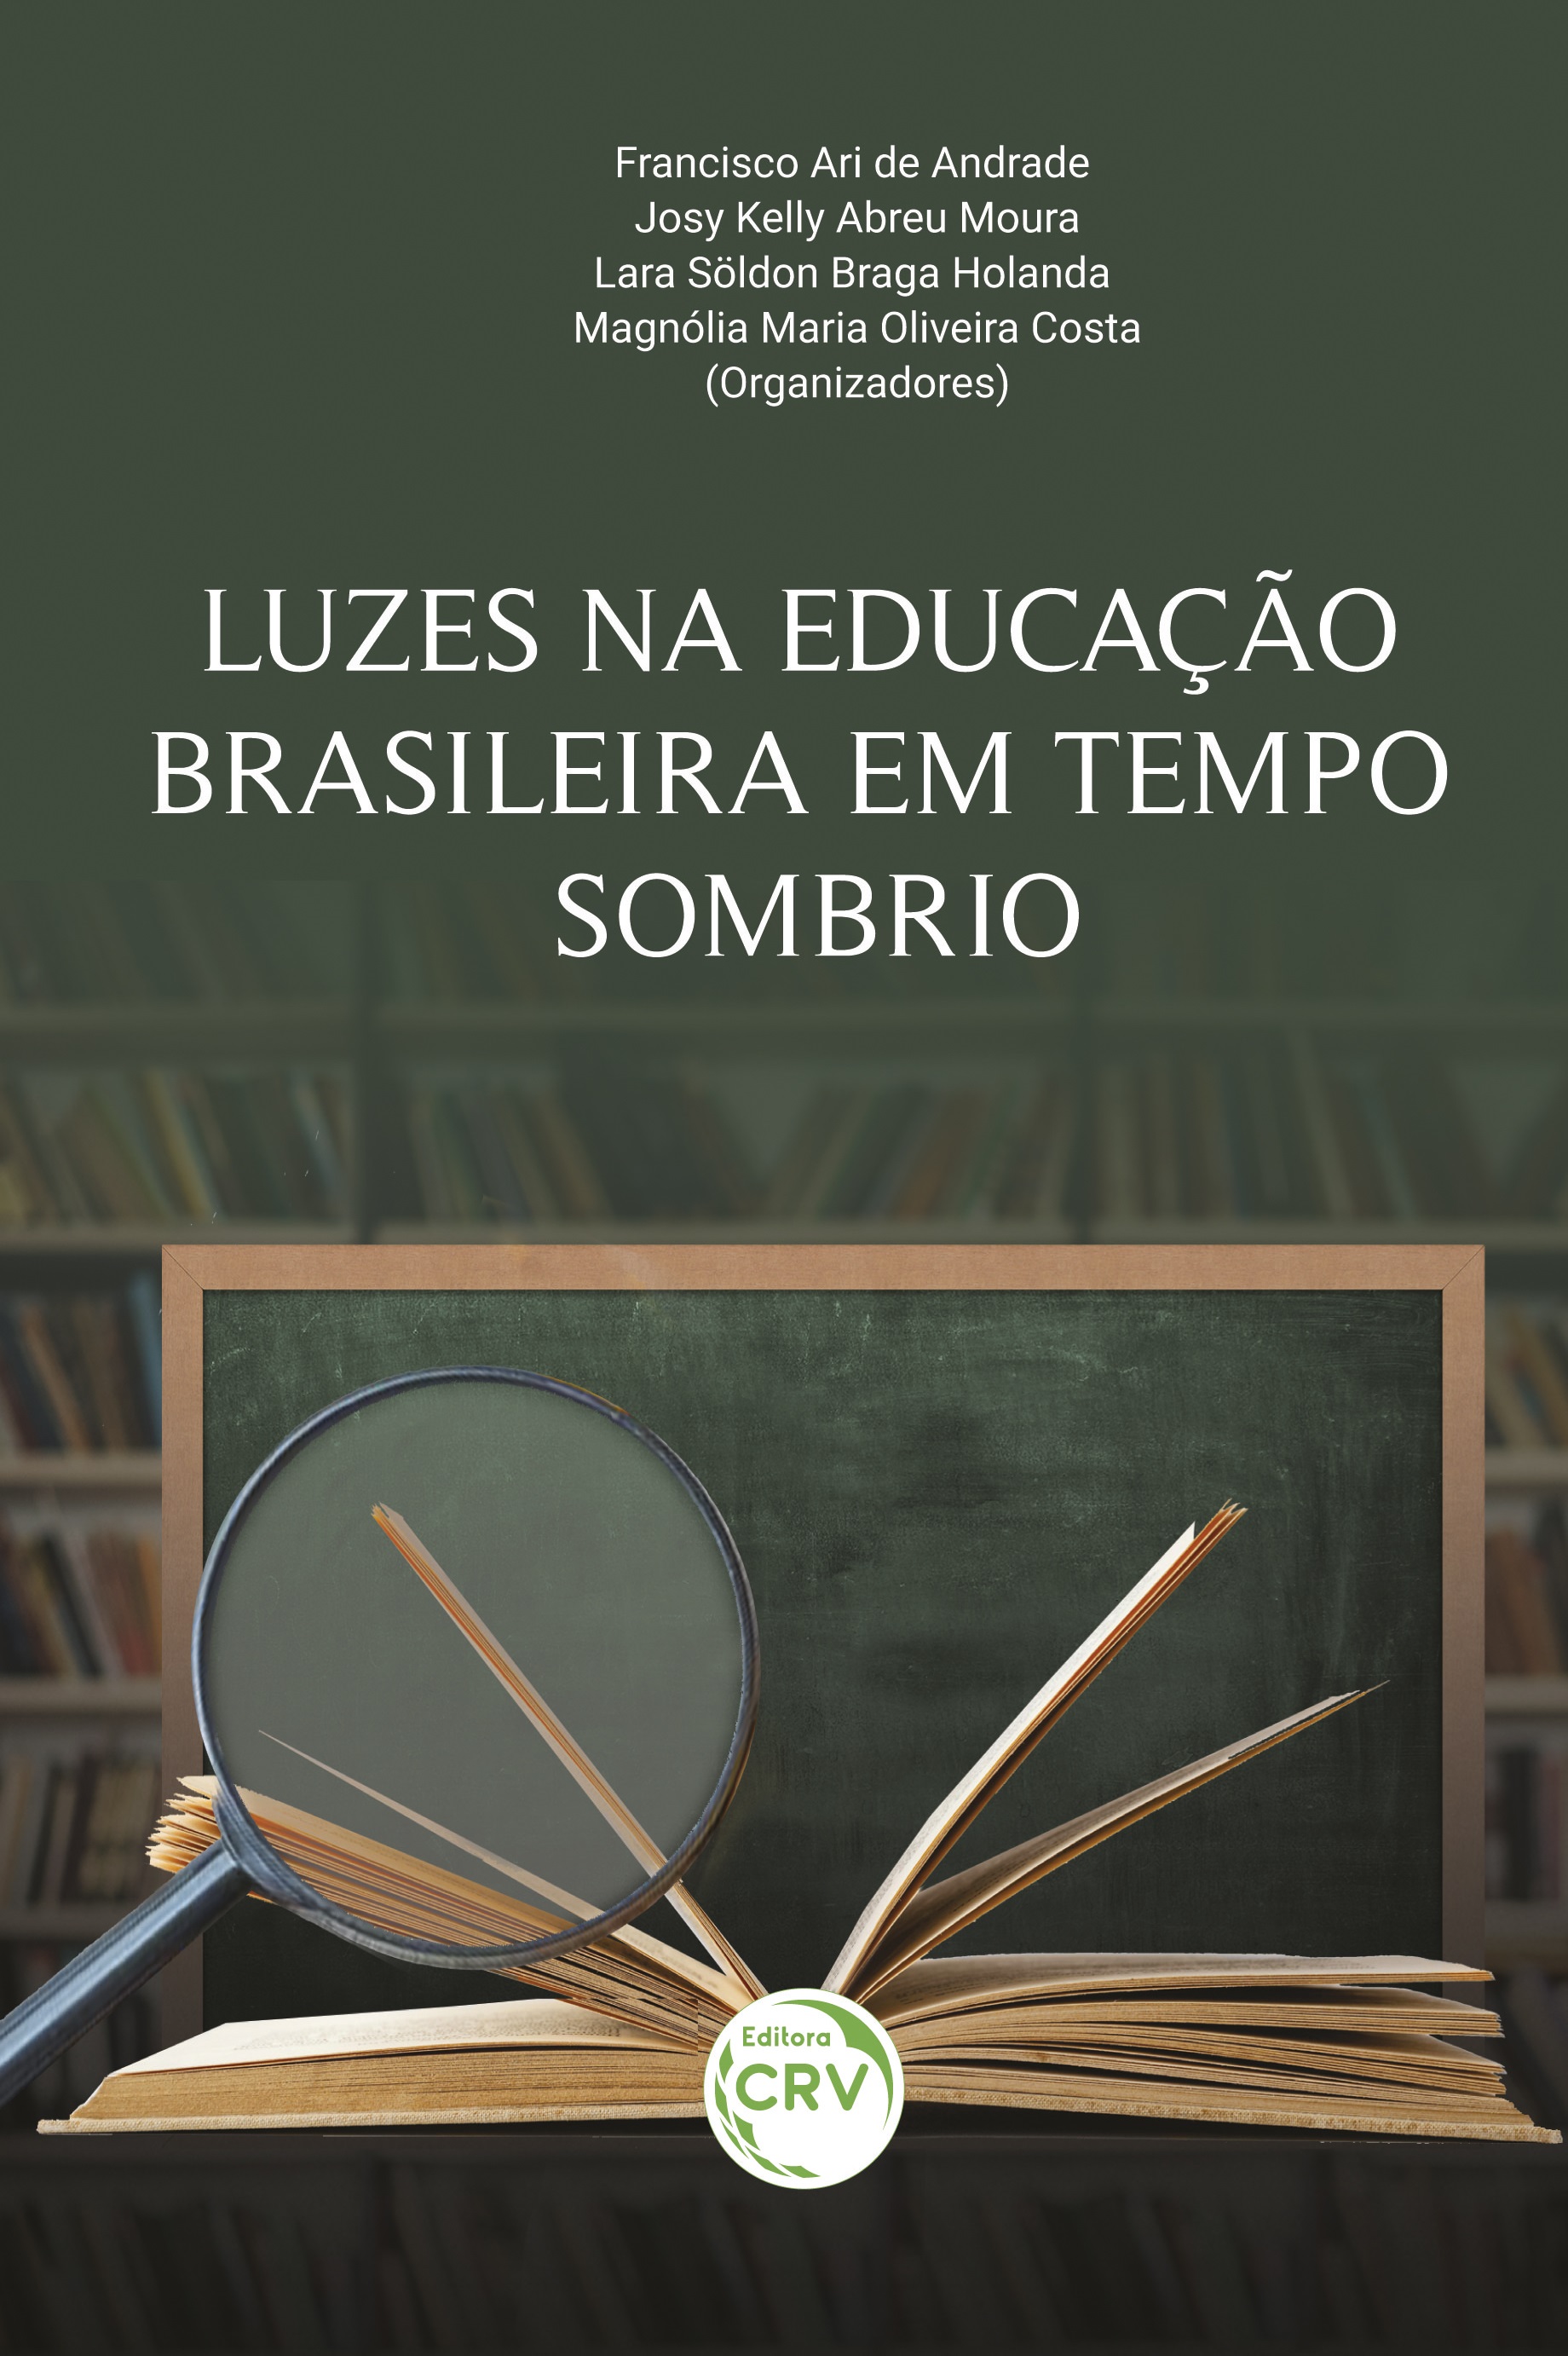 LUZES NA EDUCAÇÃO BRASILEIRA EM TEMPO SOMBRIO